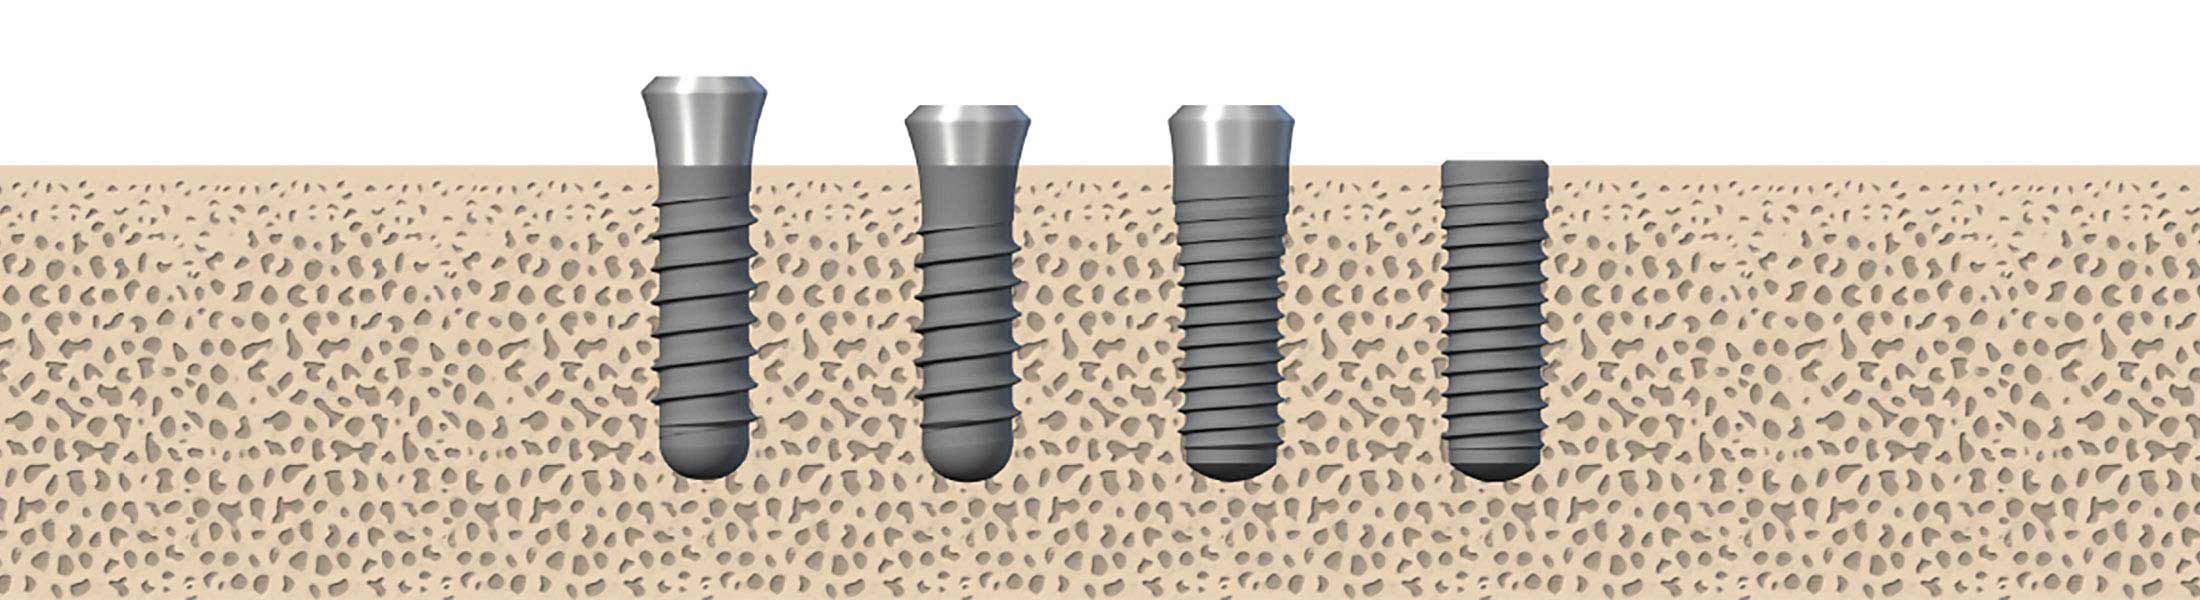 Implantsysteme und Implantatformen